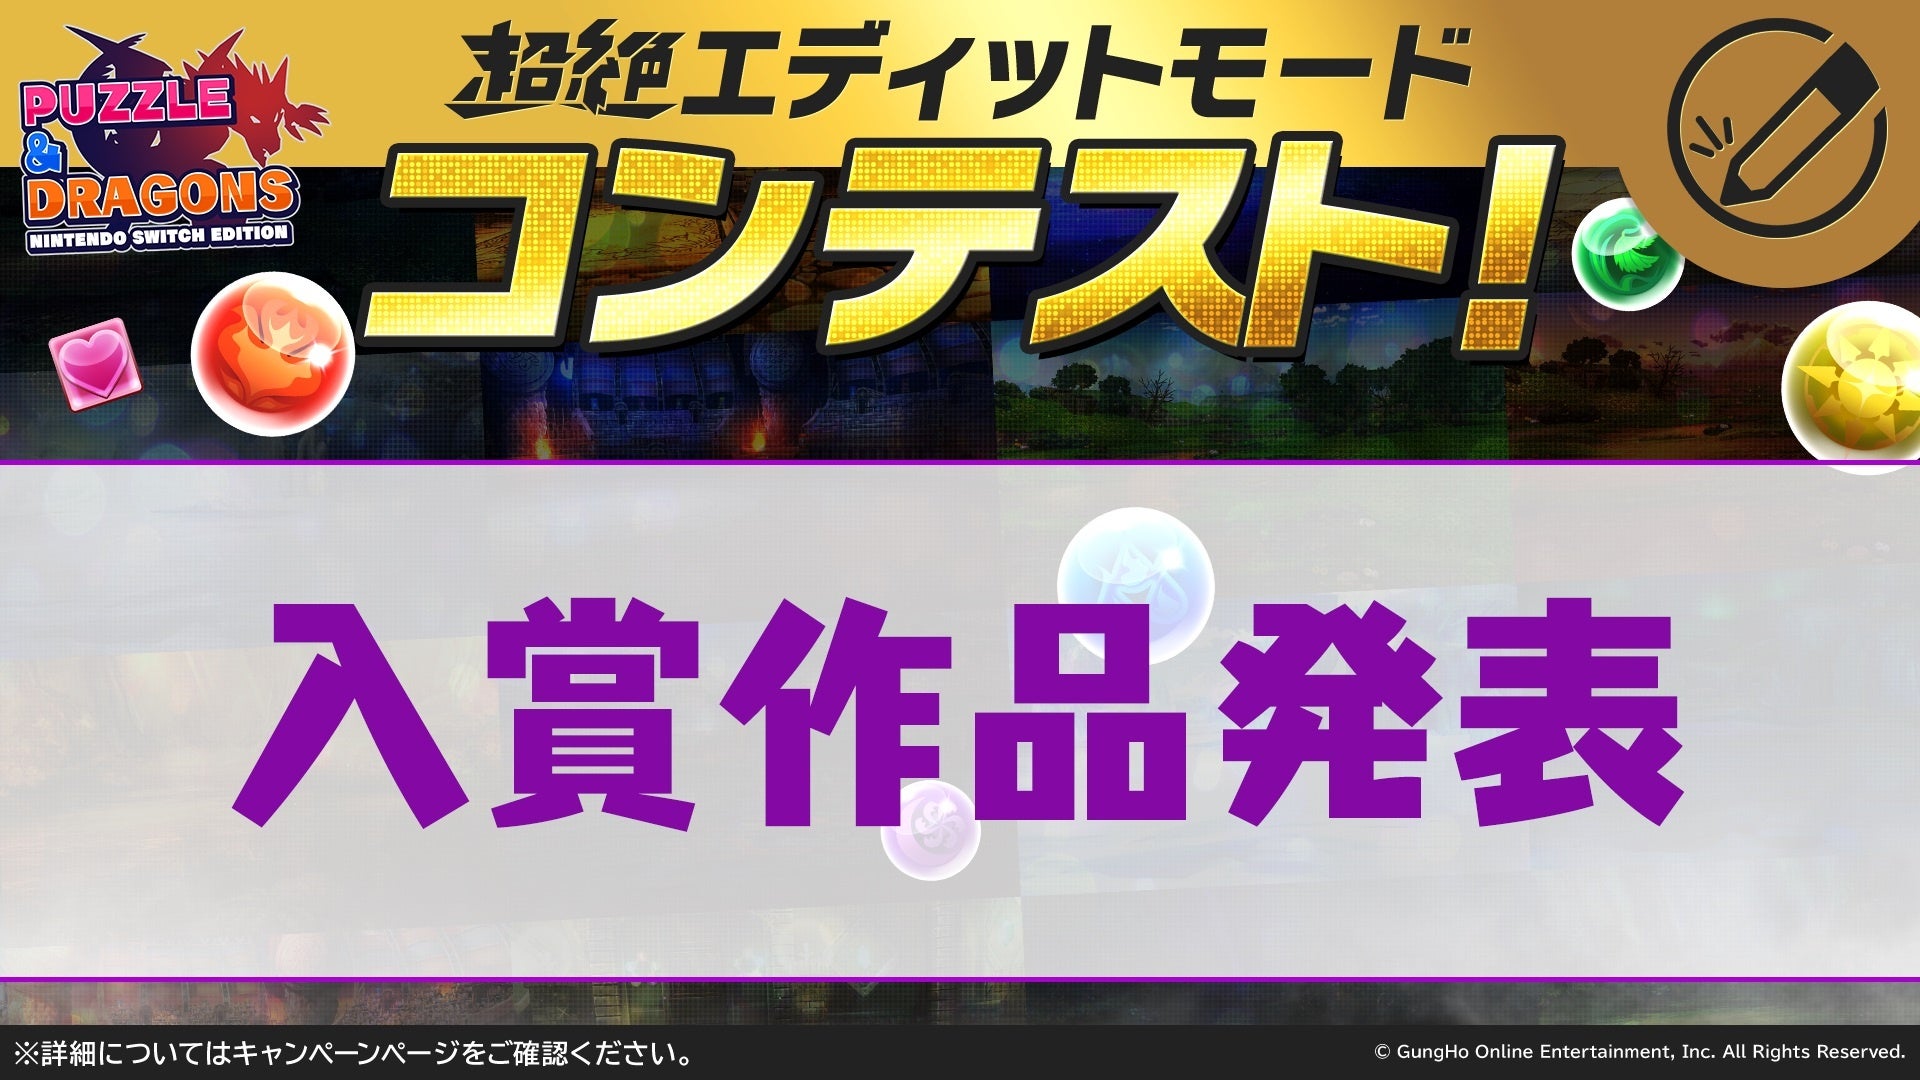 【PUZZLE & DRAGONS Nintendo Switch Edition】「超絶エディットモードコンテスト」の入賞作品が決定！